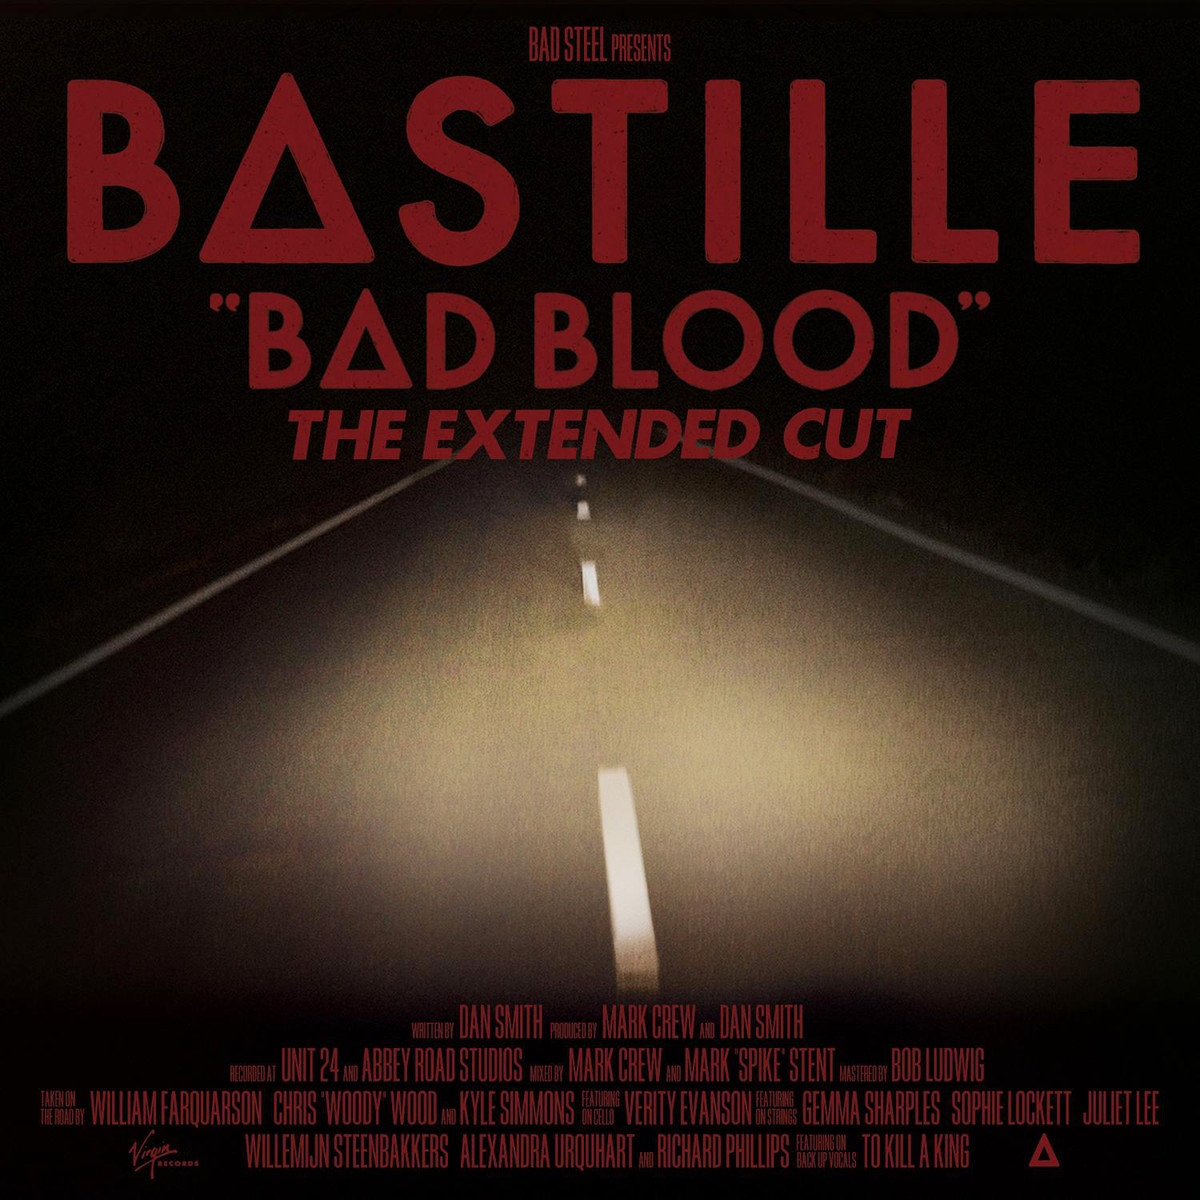 Bad blood bastille video meaning